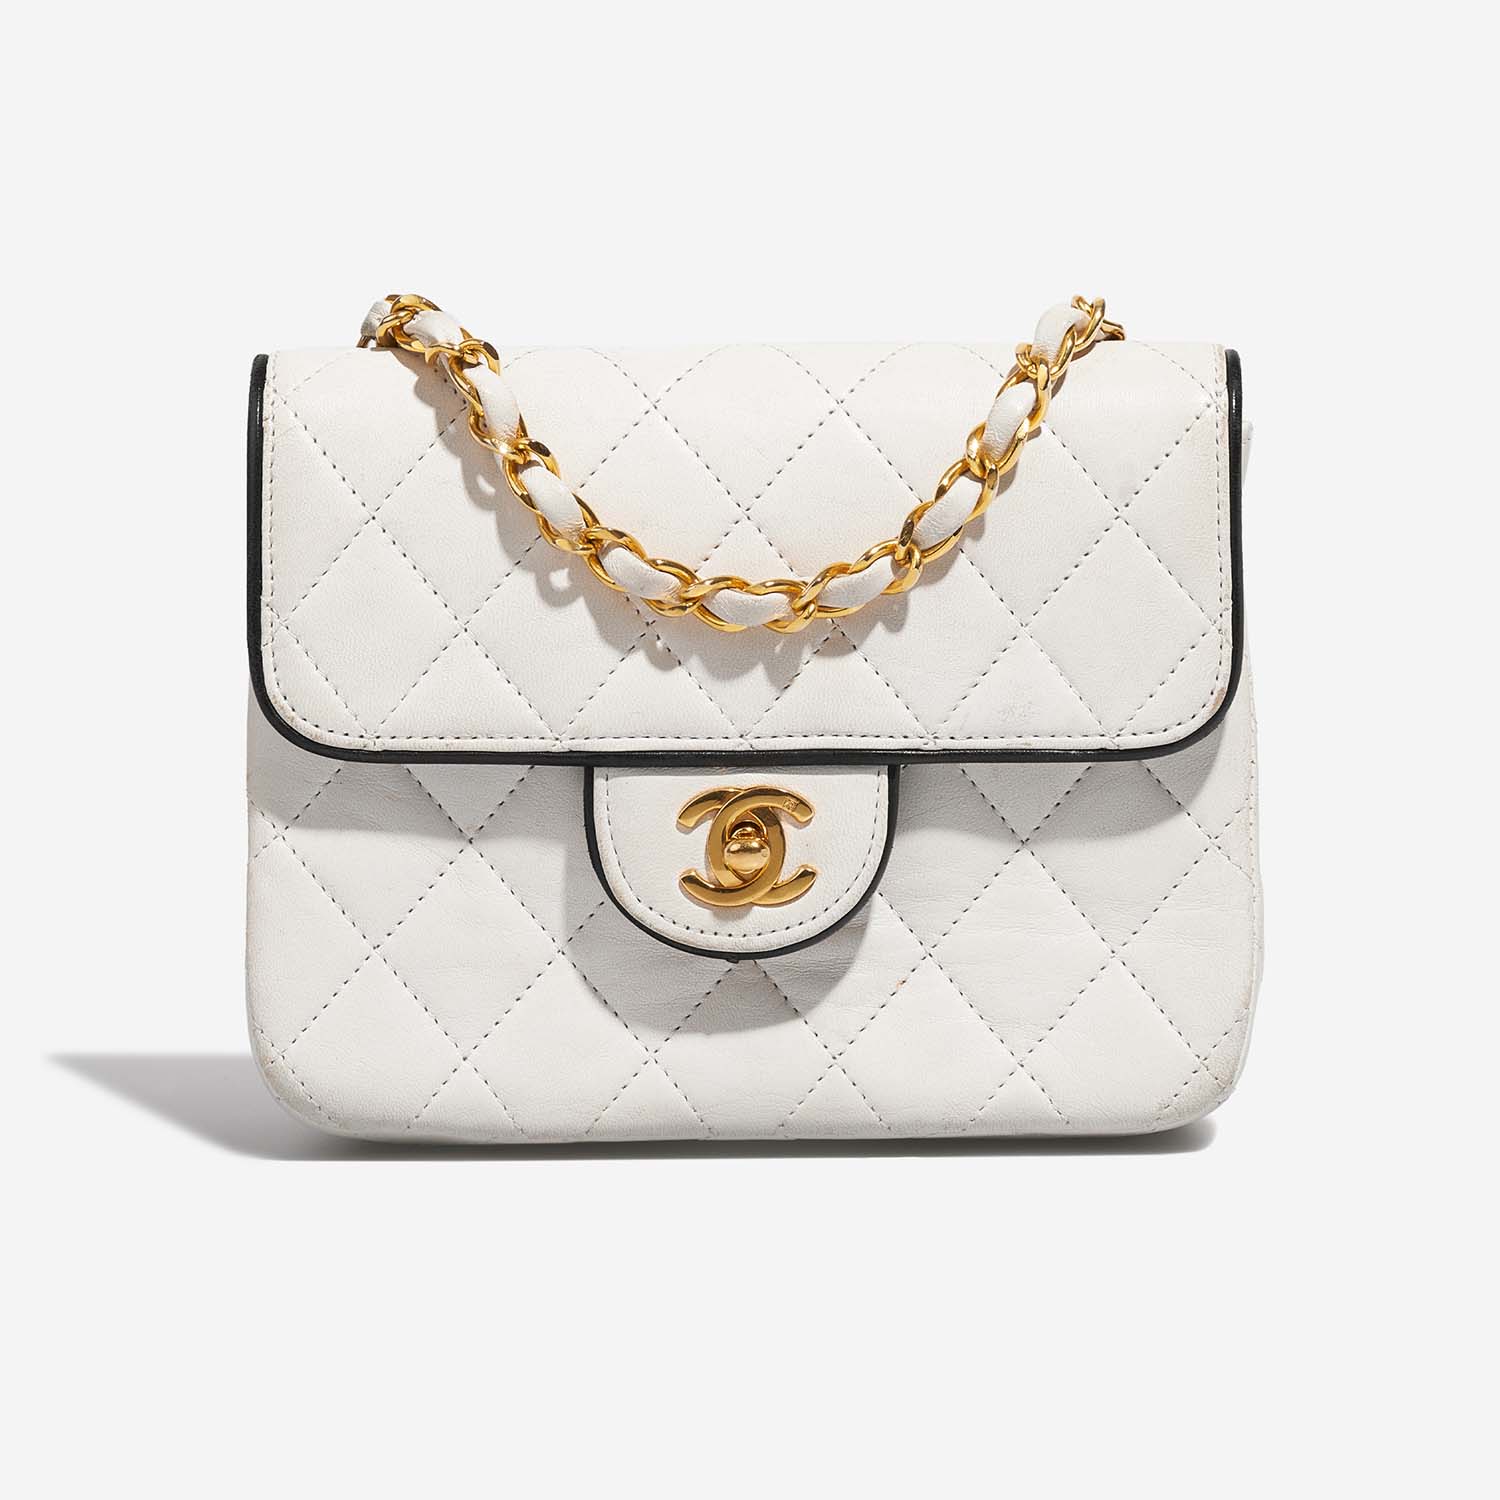 Chanel Timeless MiniSquare White Front | Verkaufen Sie Ihre Designer-Tasche auf Saclab.com